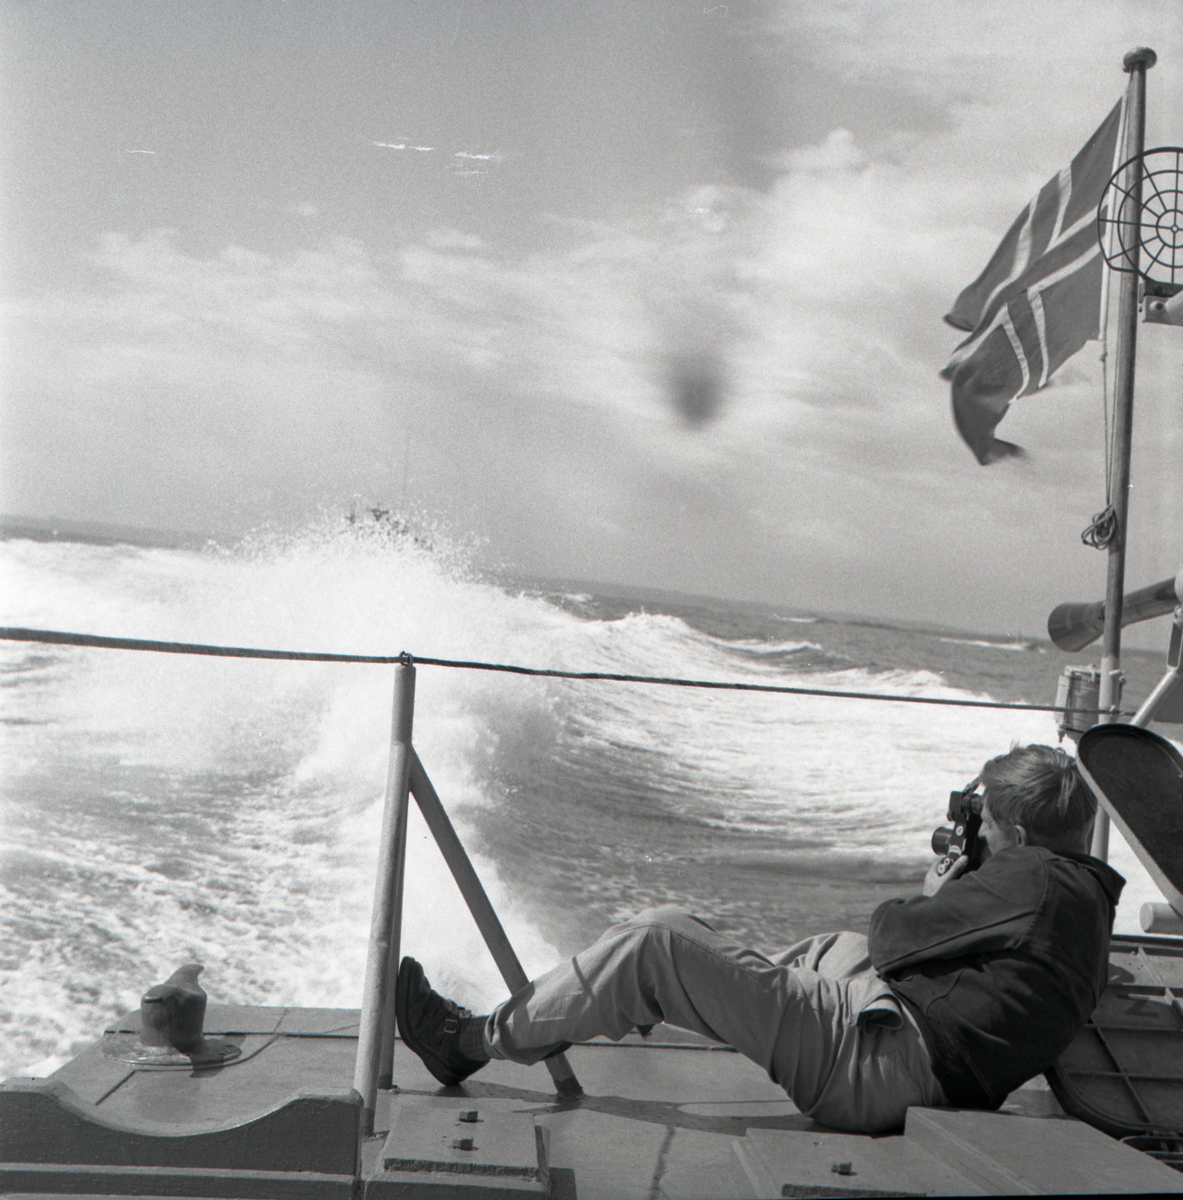 Samlefoto: Elco-klasse MTB-er gjennom Bandak-kanalen i juli 1953.
Full fart, med kameramann.